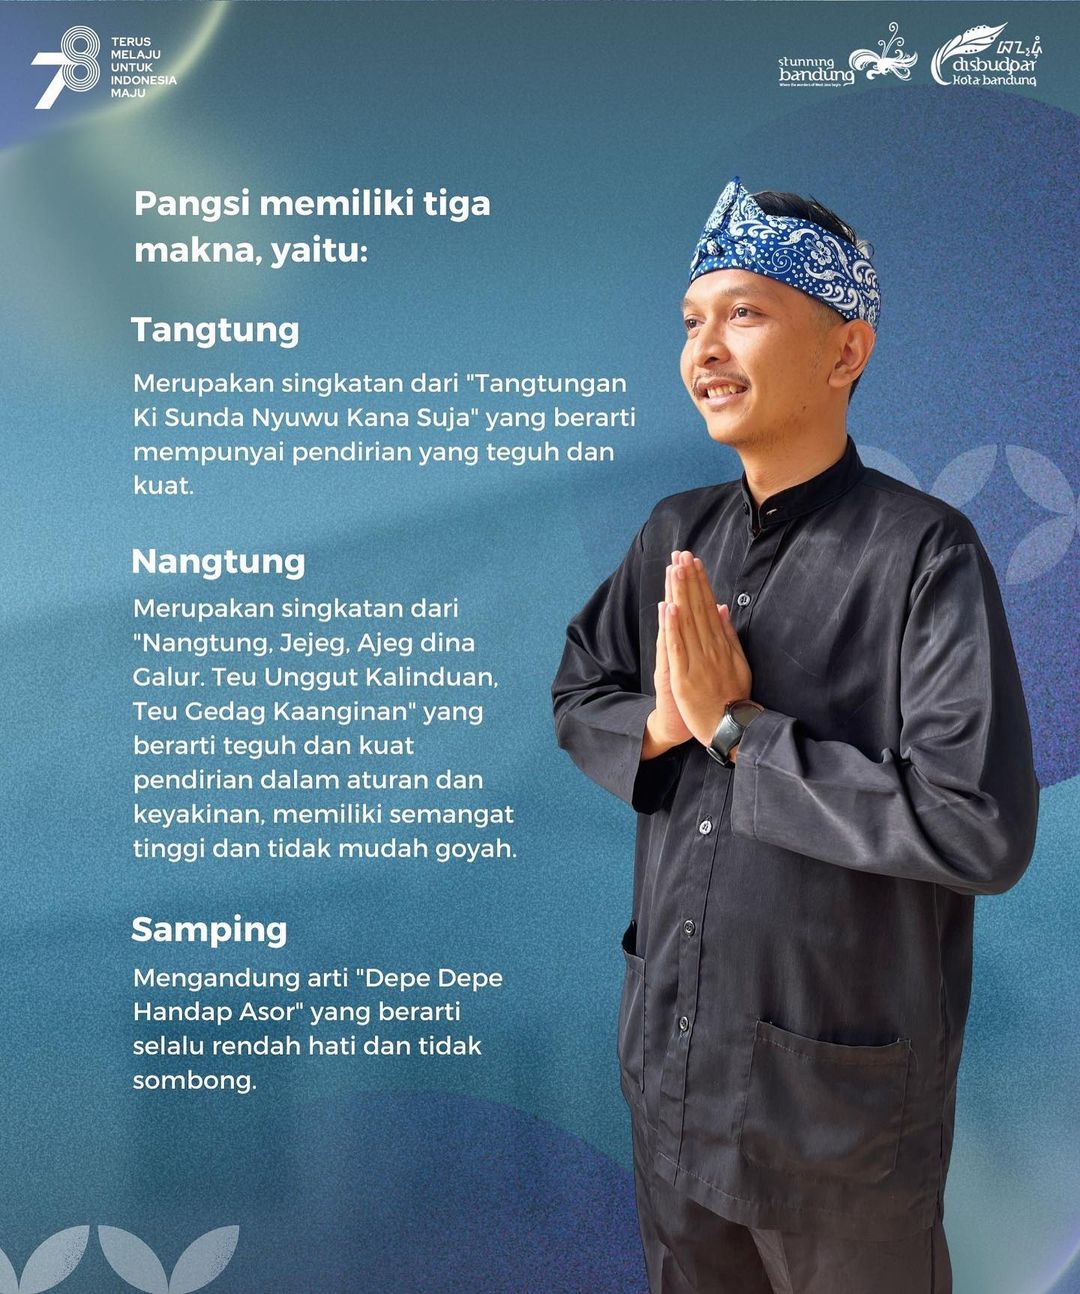 Filosofi Baju Pangsi Sunda | Sumber Instagram @disbudpar.bdg